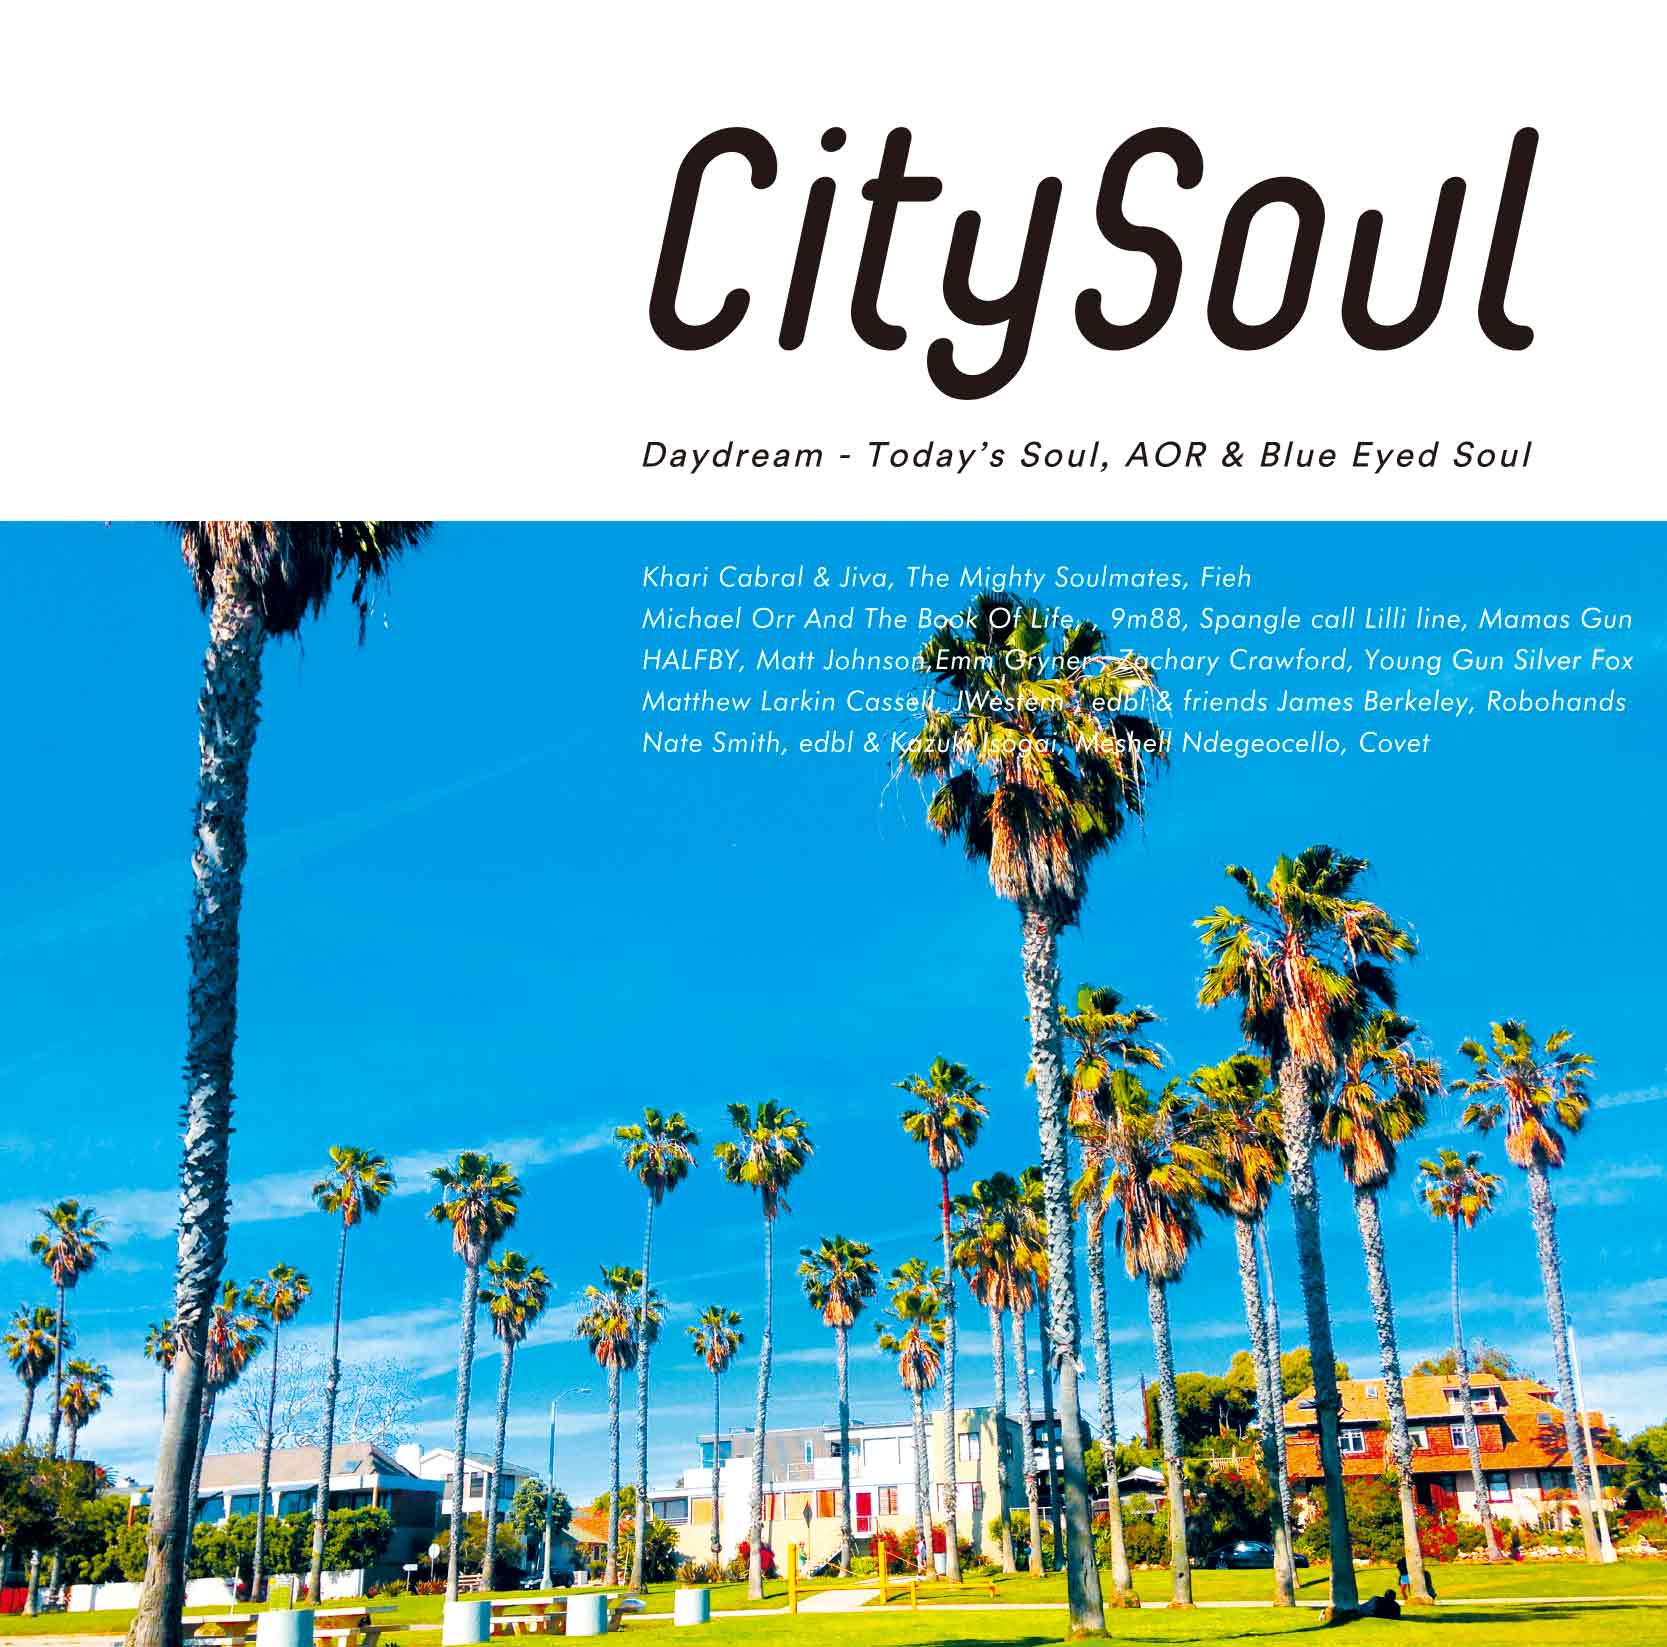 City Soul : Daydream - Today's Soul, AOR & Blue Eyed Soul